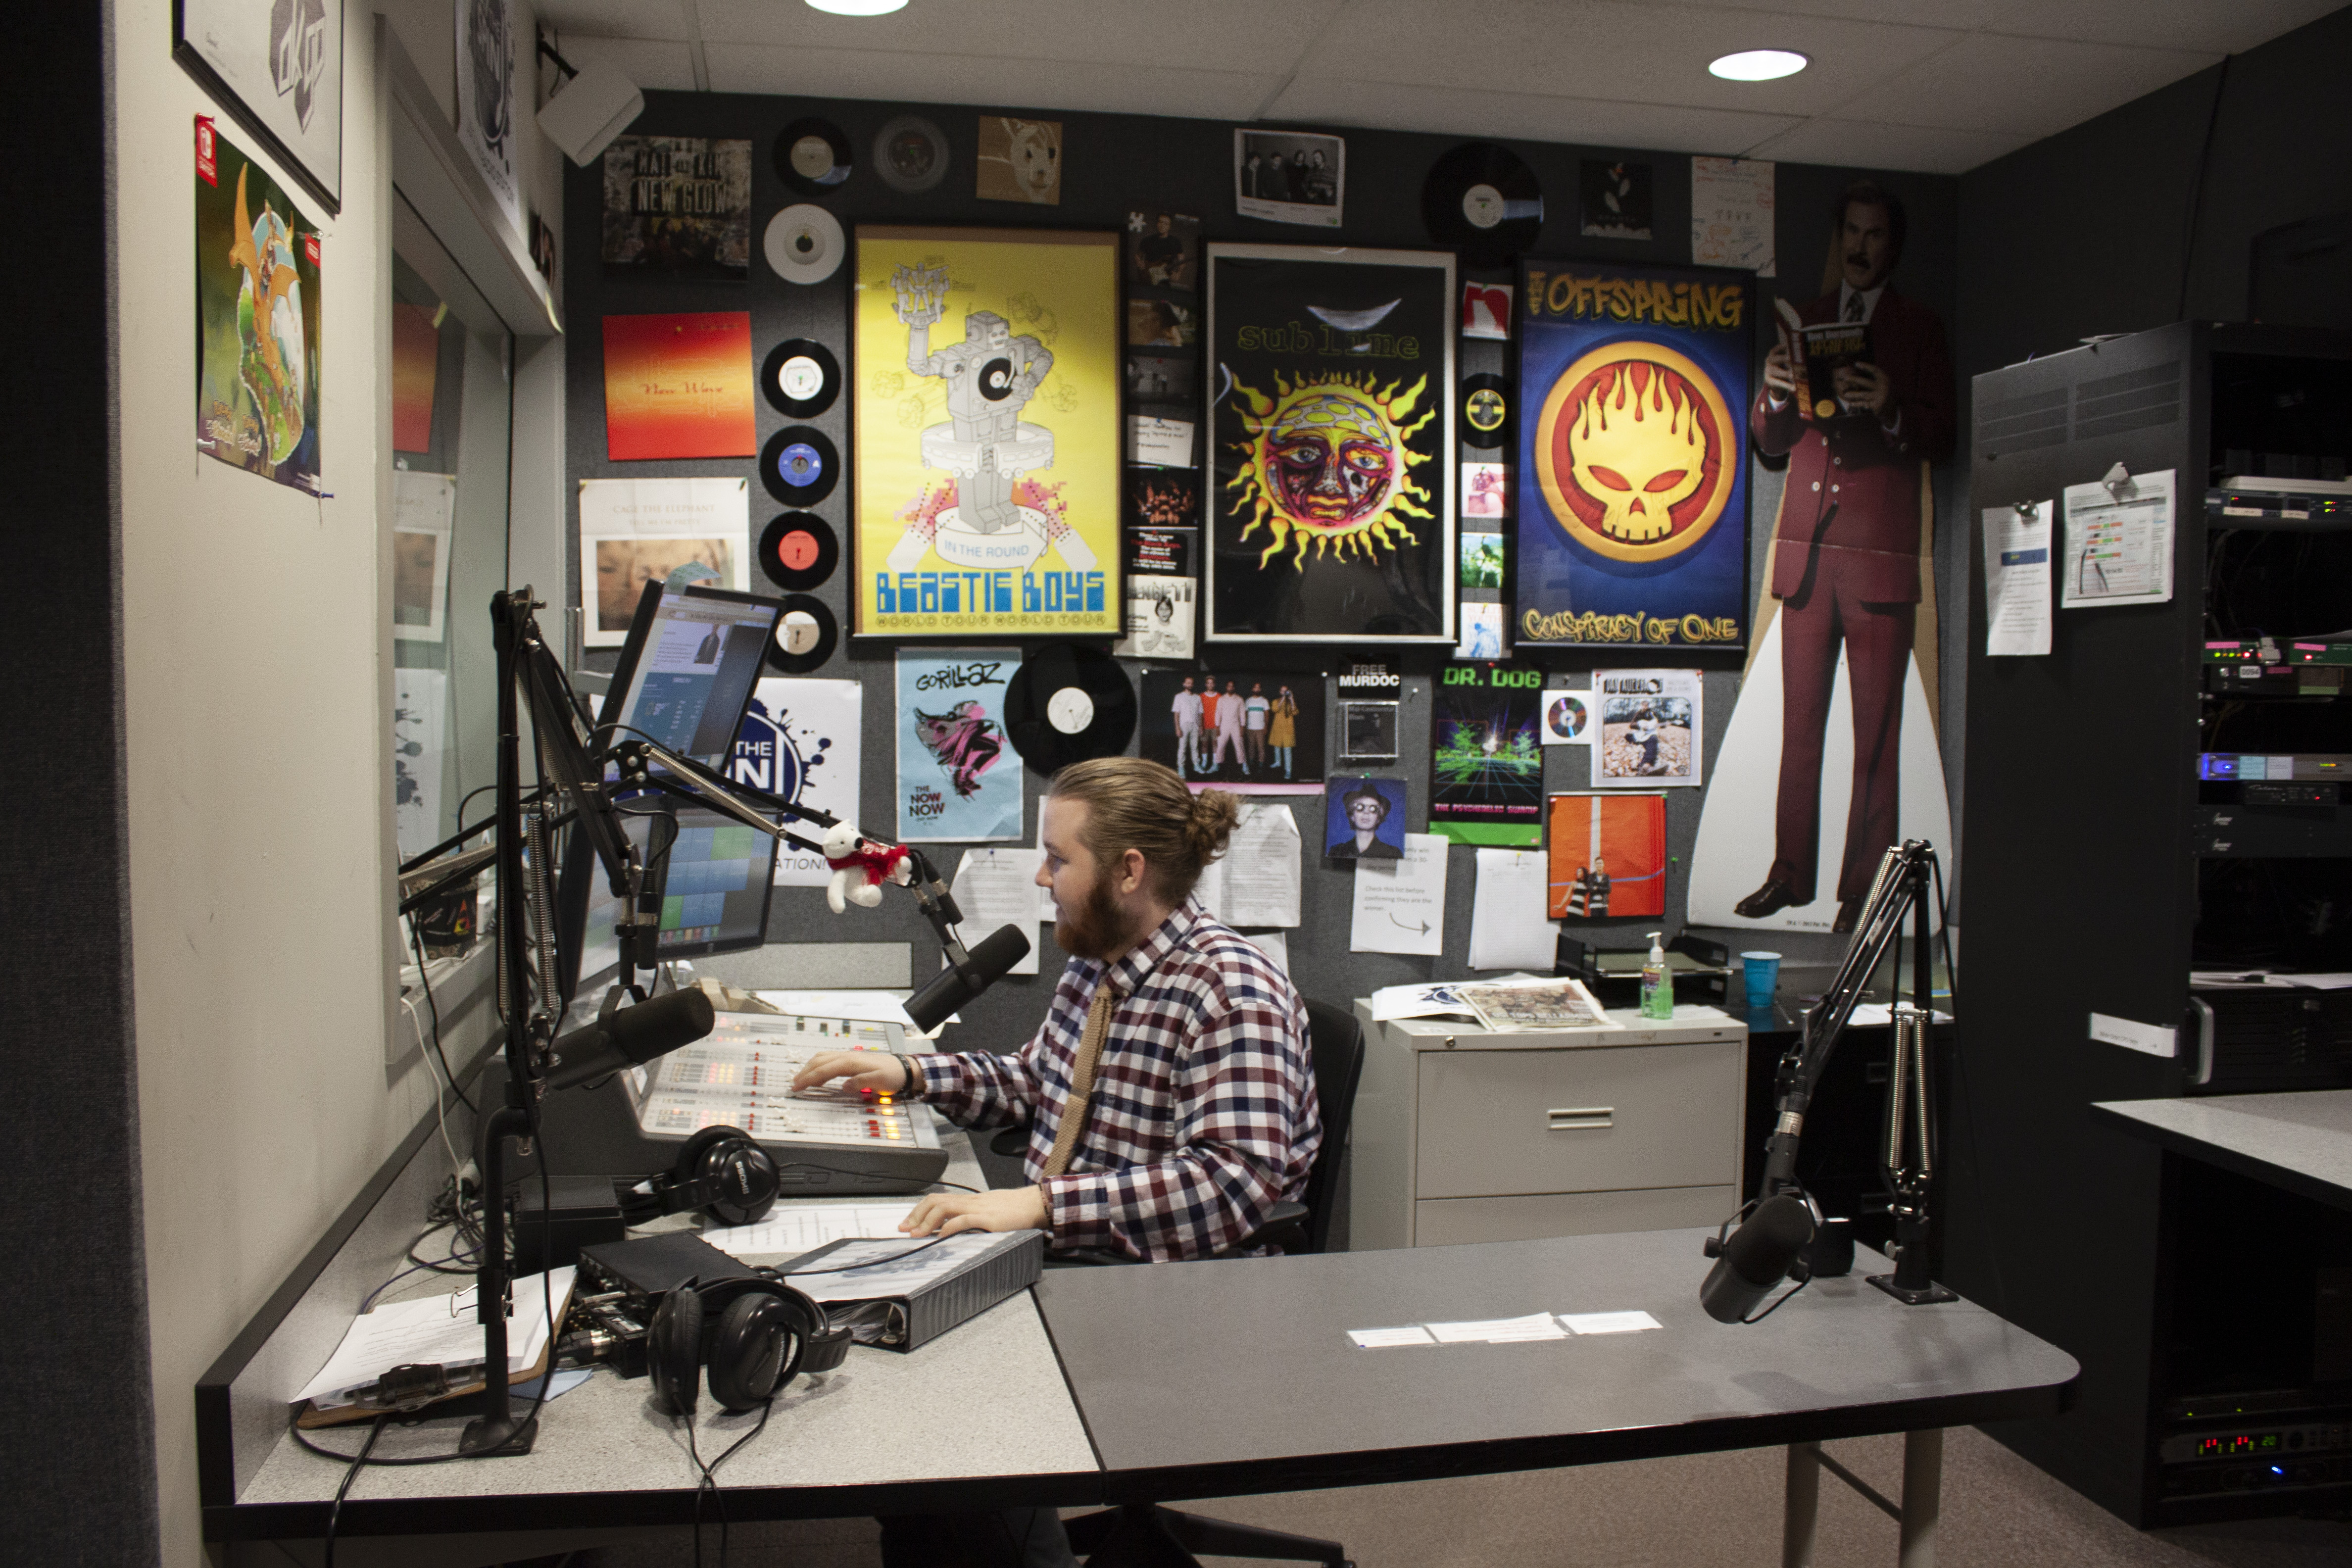 Colin McDuffee in the radio studio